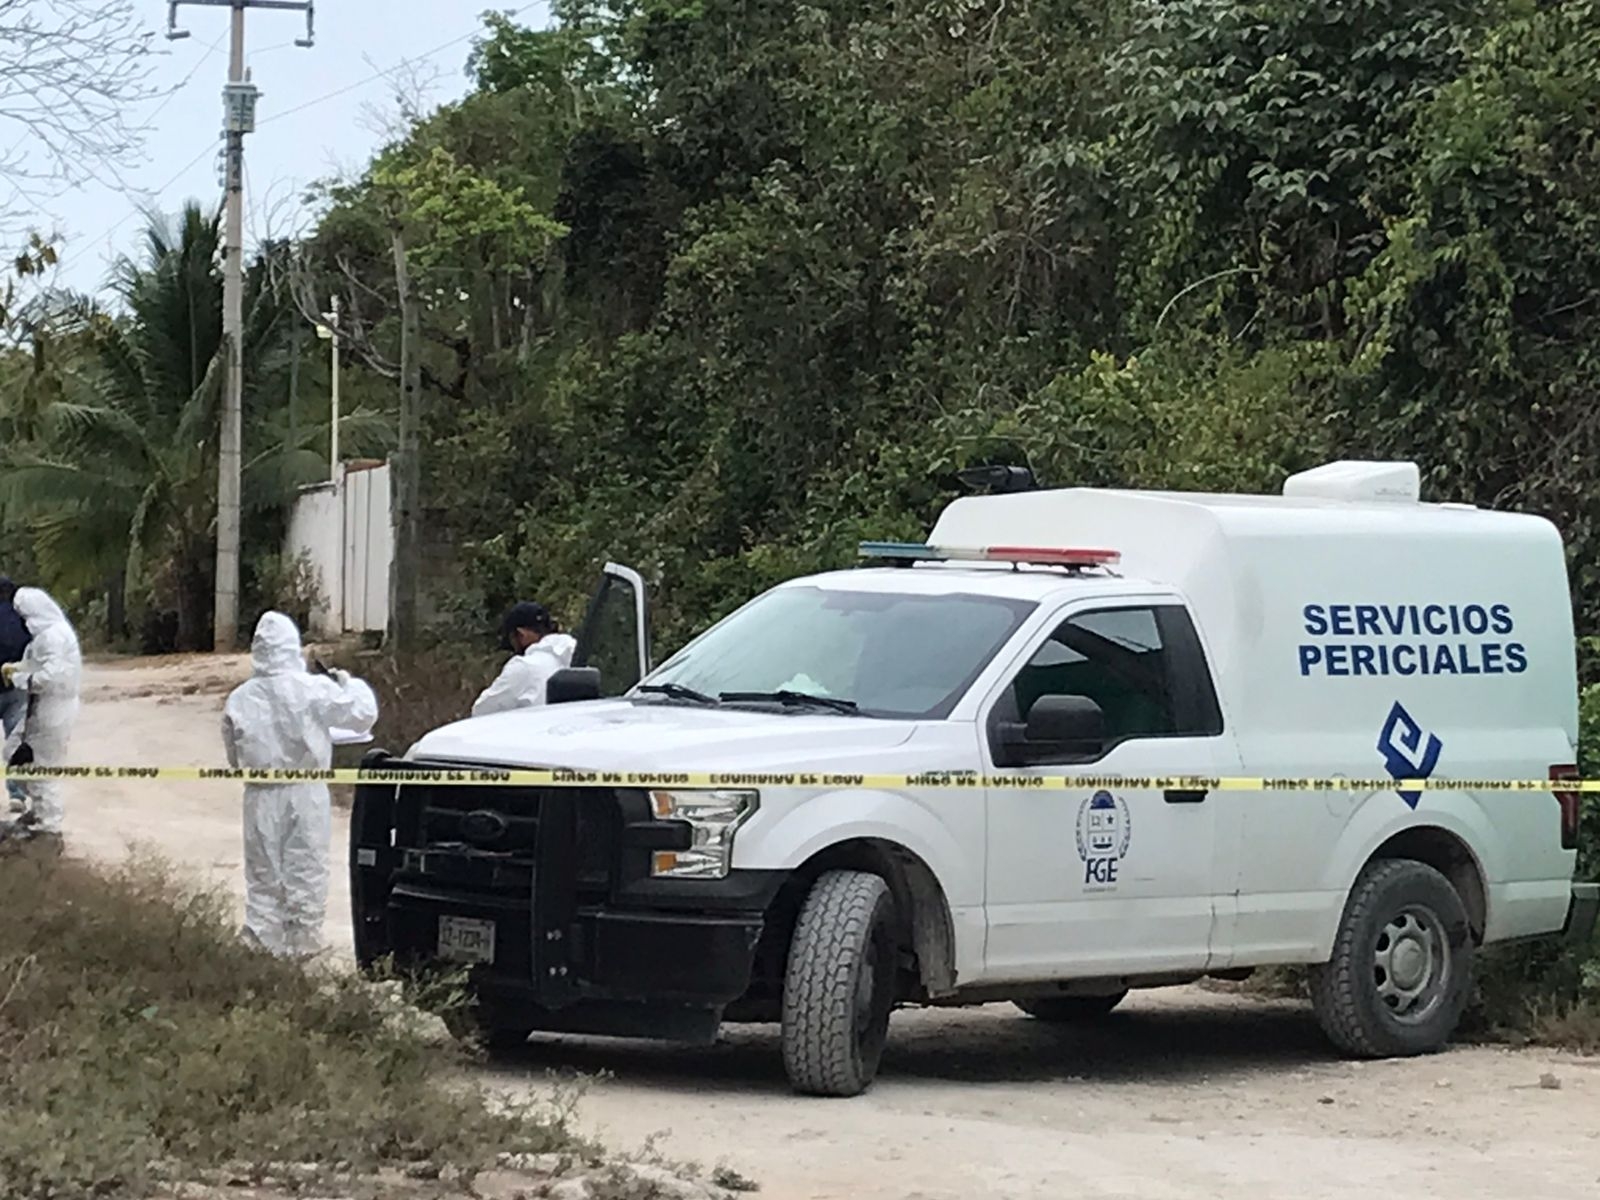 Restos humanos fueron encontrados dentro de bolsas en la localidad de Bonfil en Cancún